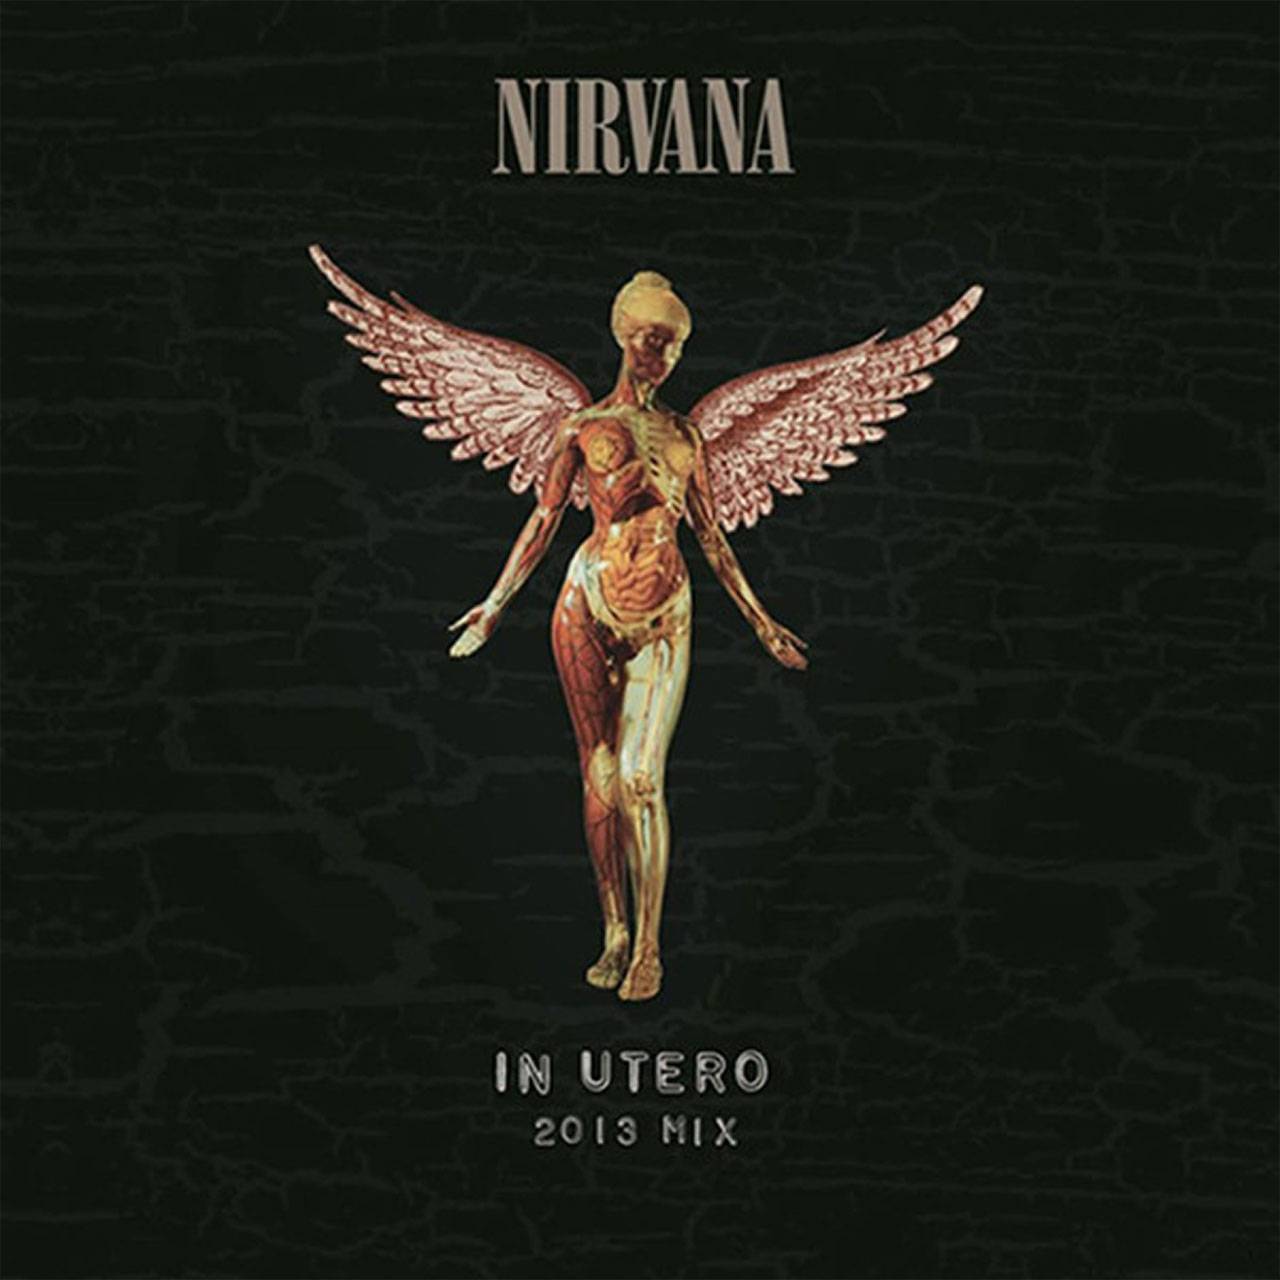 Nirvana - In Utero (2013 Mix) 2LP 45rmp